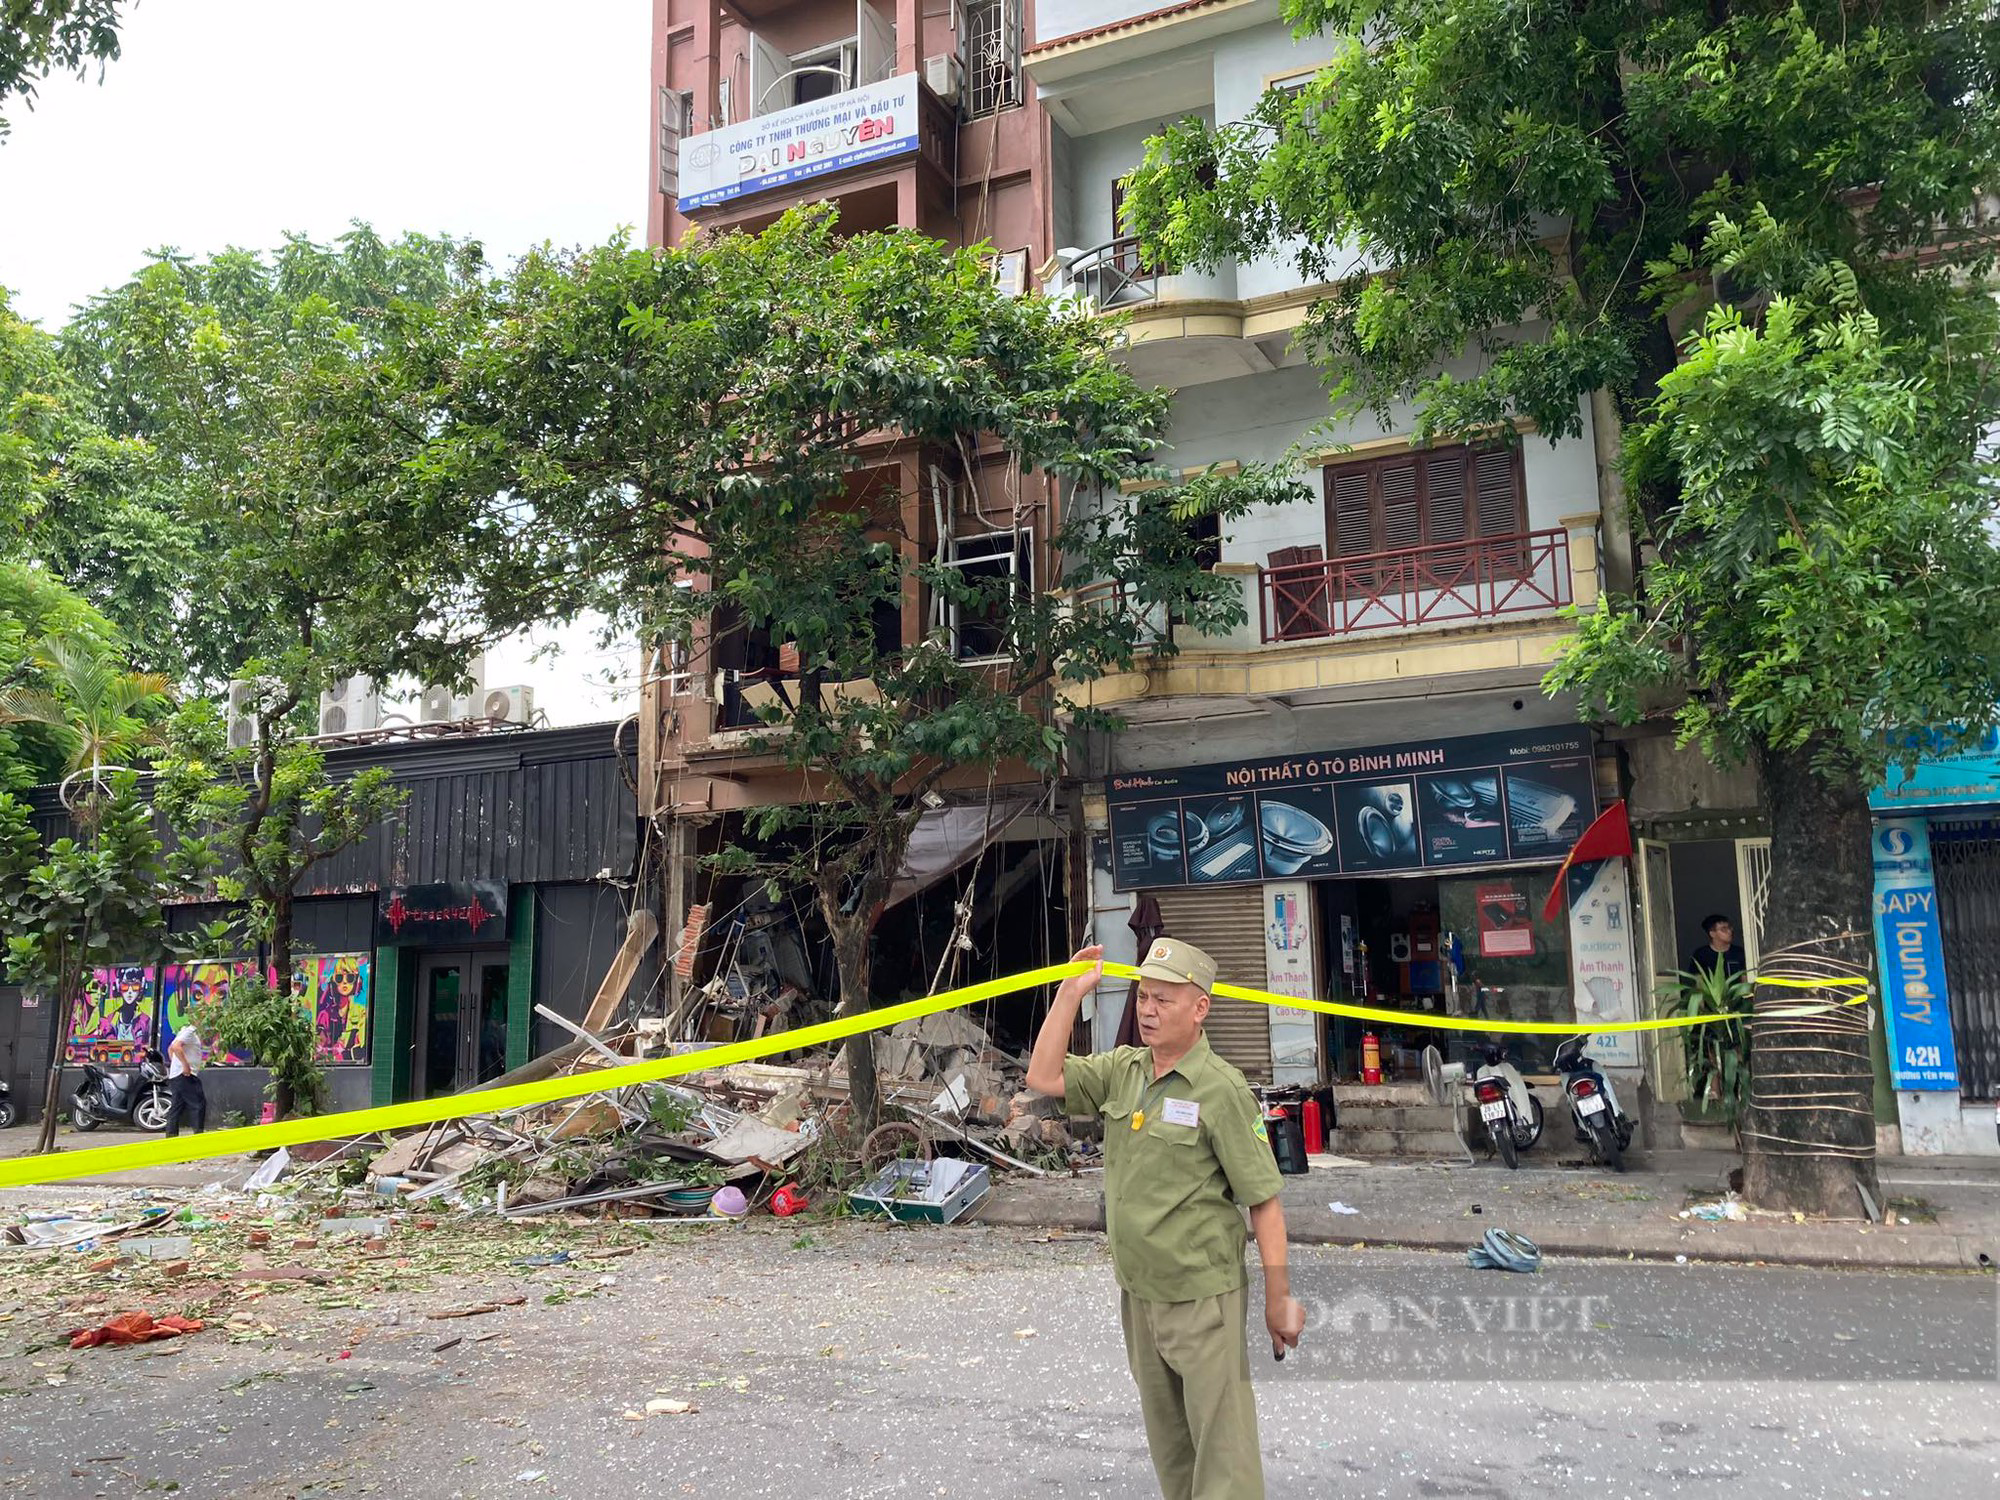 Hiện trường tan hoang sau nổ lớn cực lớn quán lẩu ở phố Yên Phụ, nhiều người bị thương nặng - Ảnh 12.